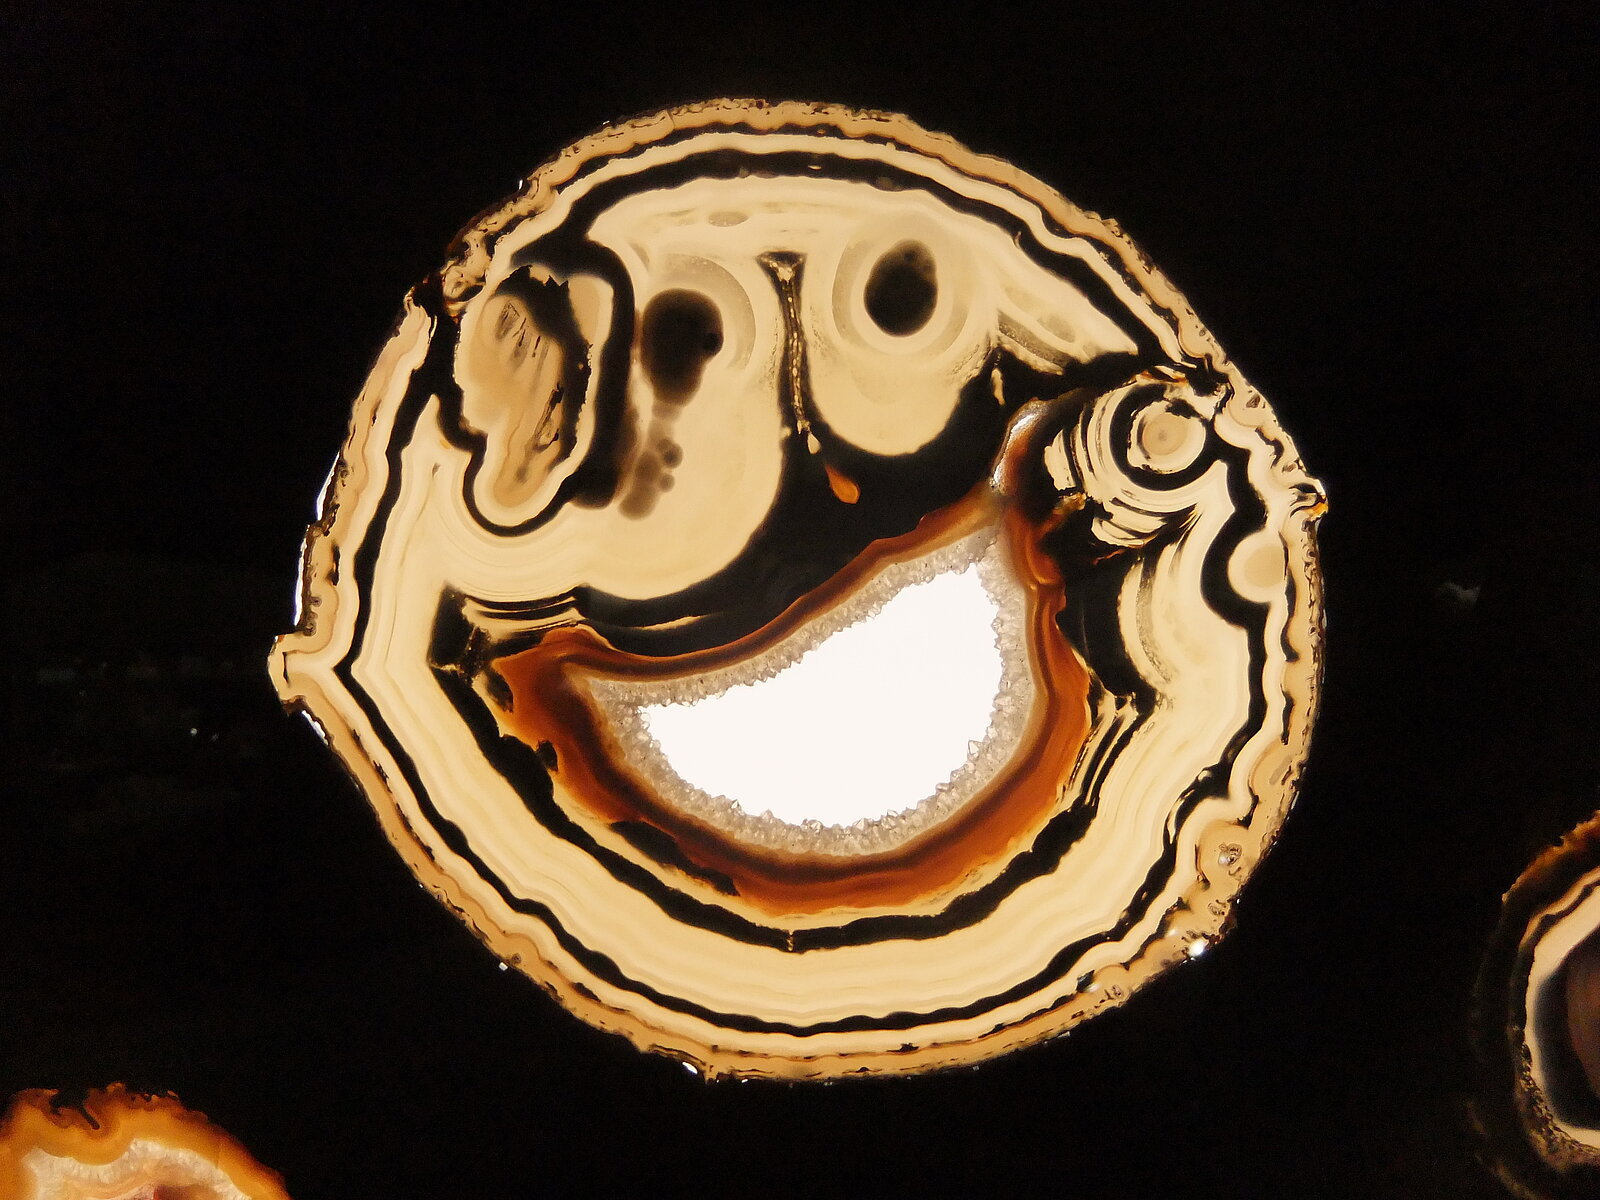 Natürliche Struktur in einer Achatscheibe, die ein lachendes Gesicht suggeriert